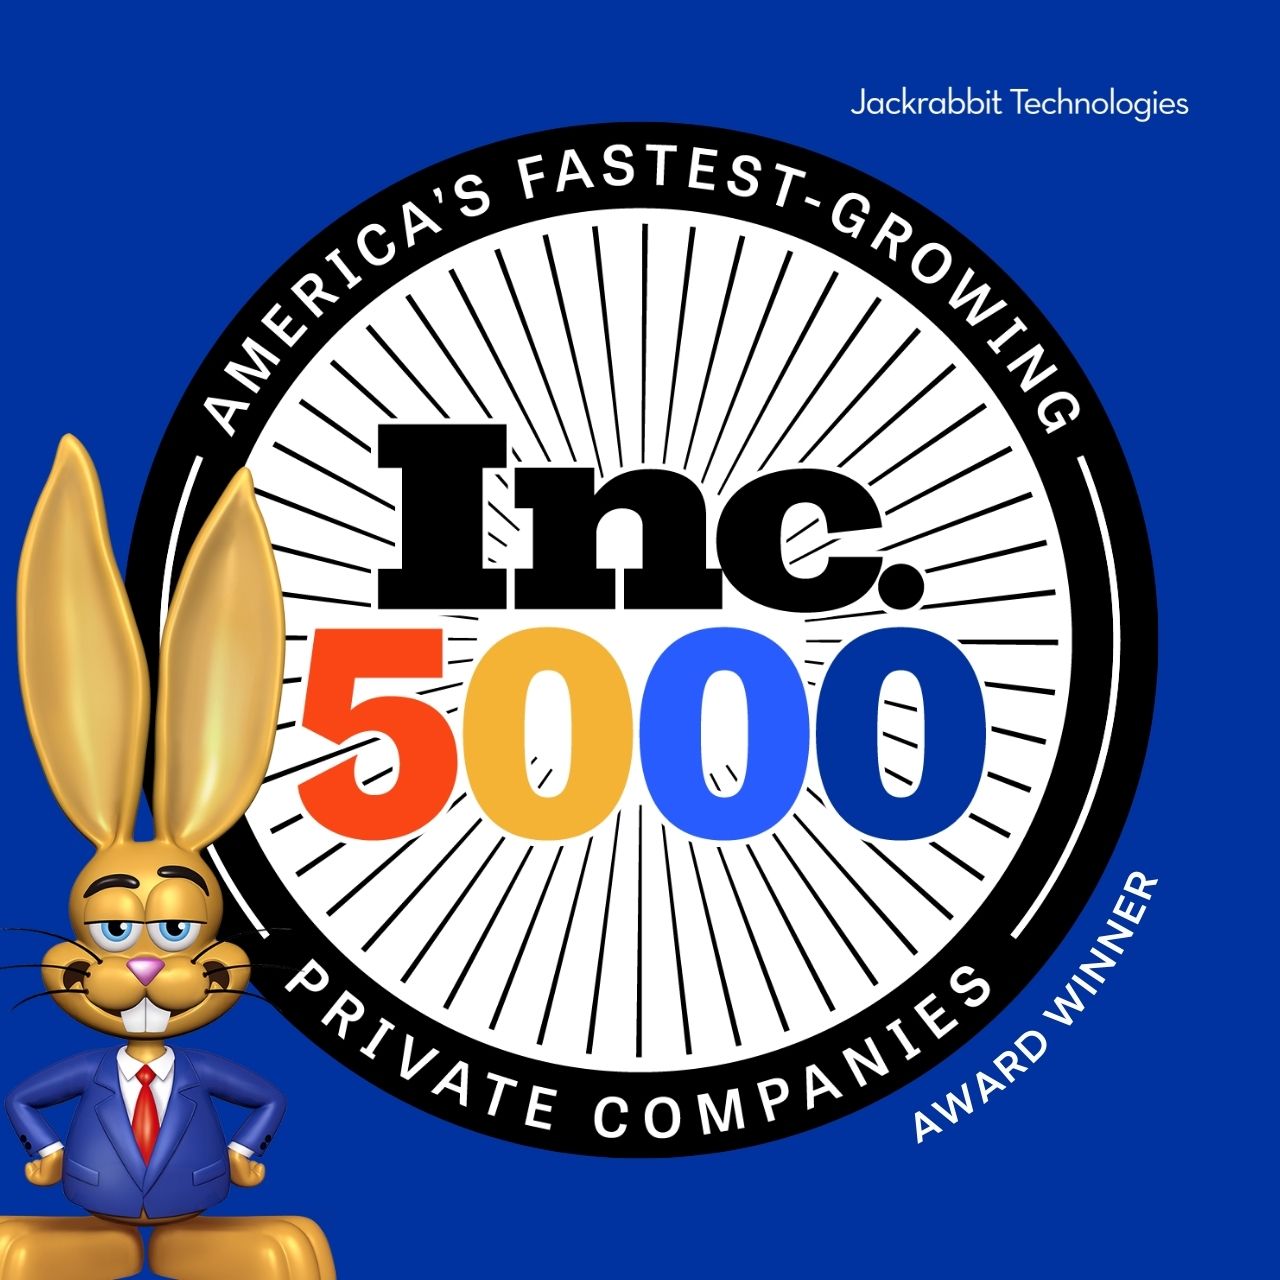 jackrabbit makes inc 5000